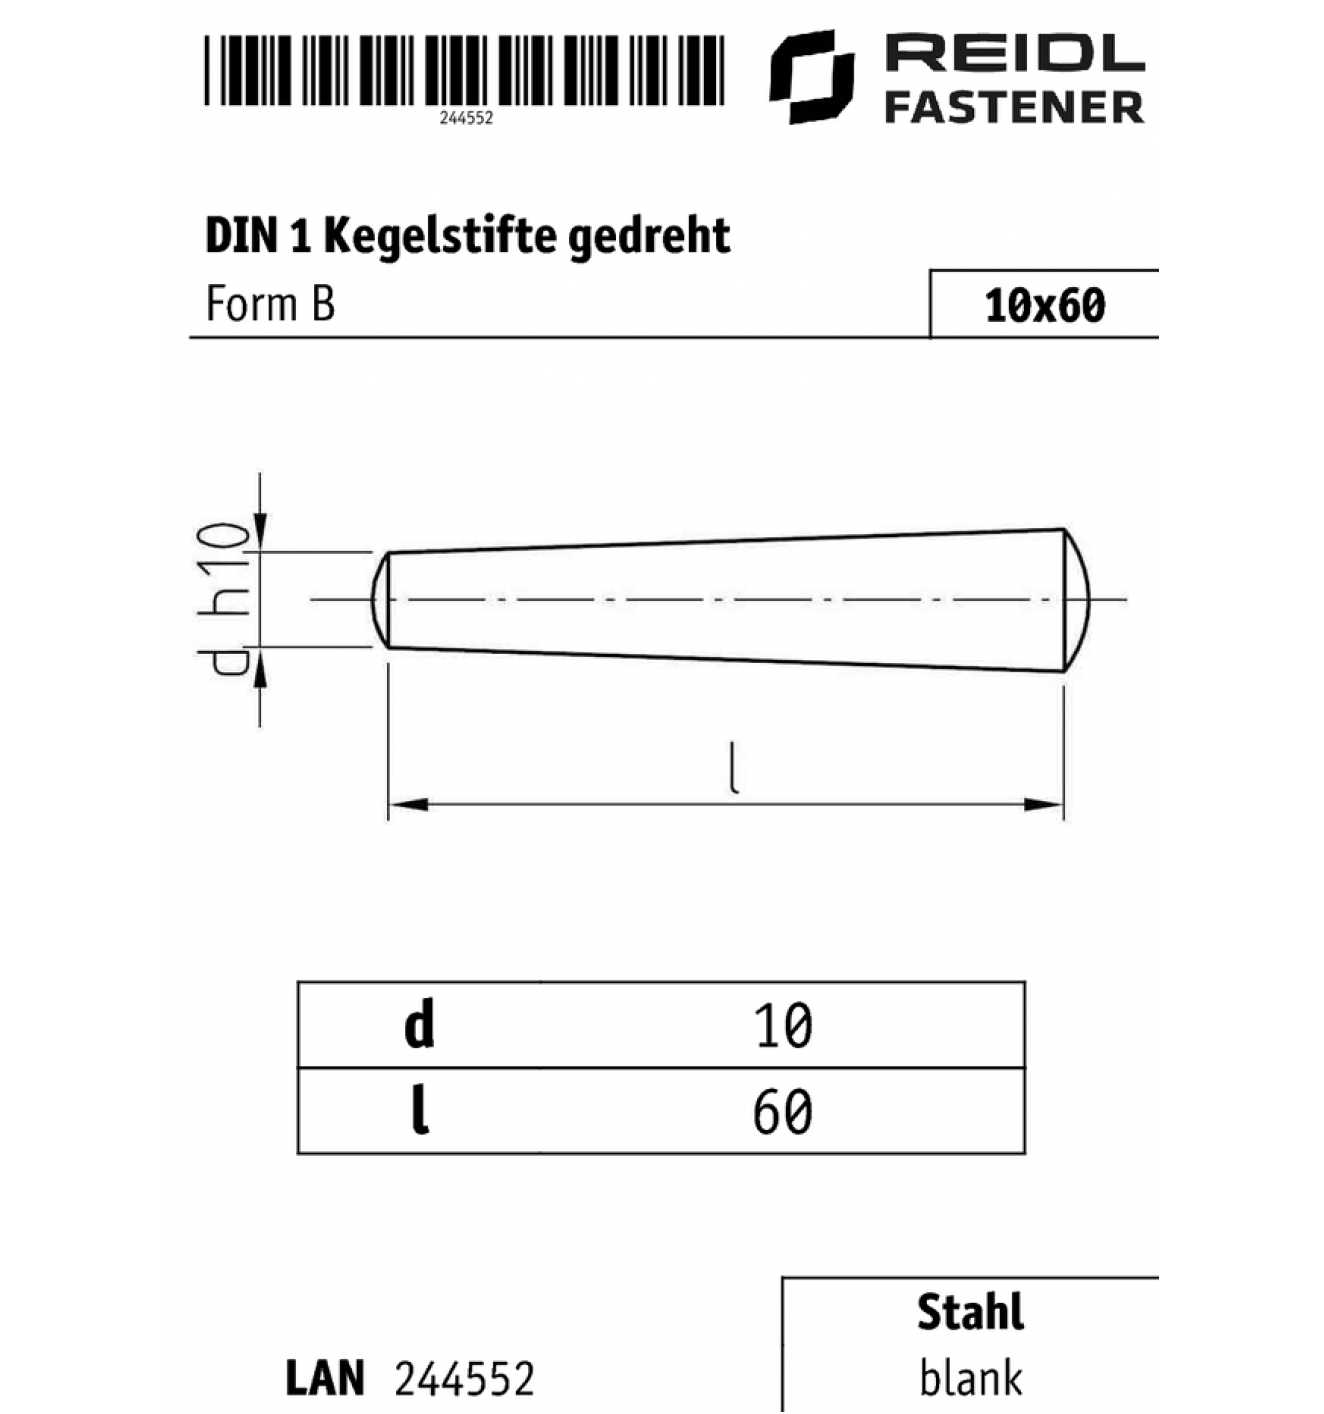 d1=10 mm Kegelstift 10x60 DIN 1 Form B Stahl gedreht  60 mm 